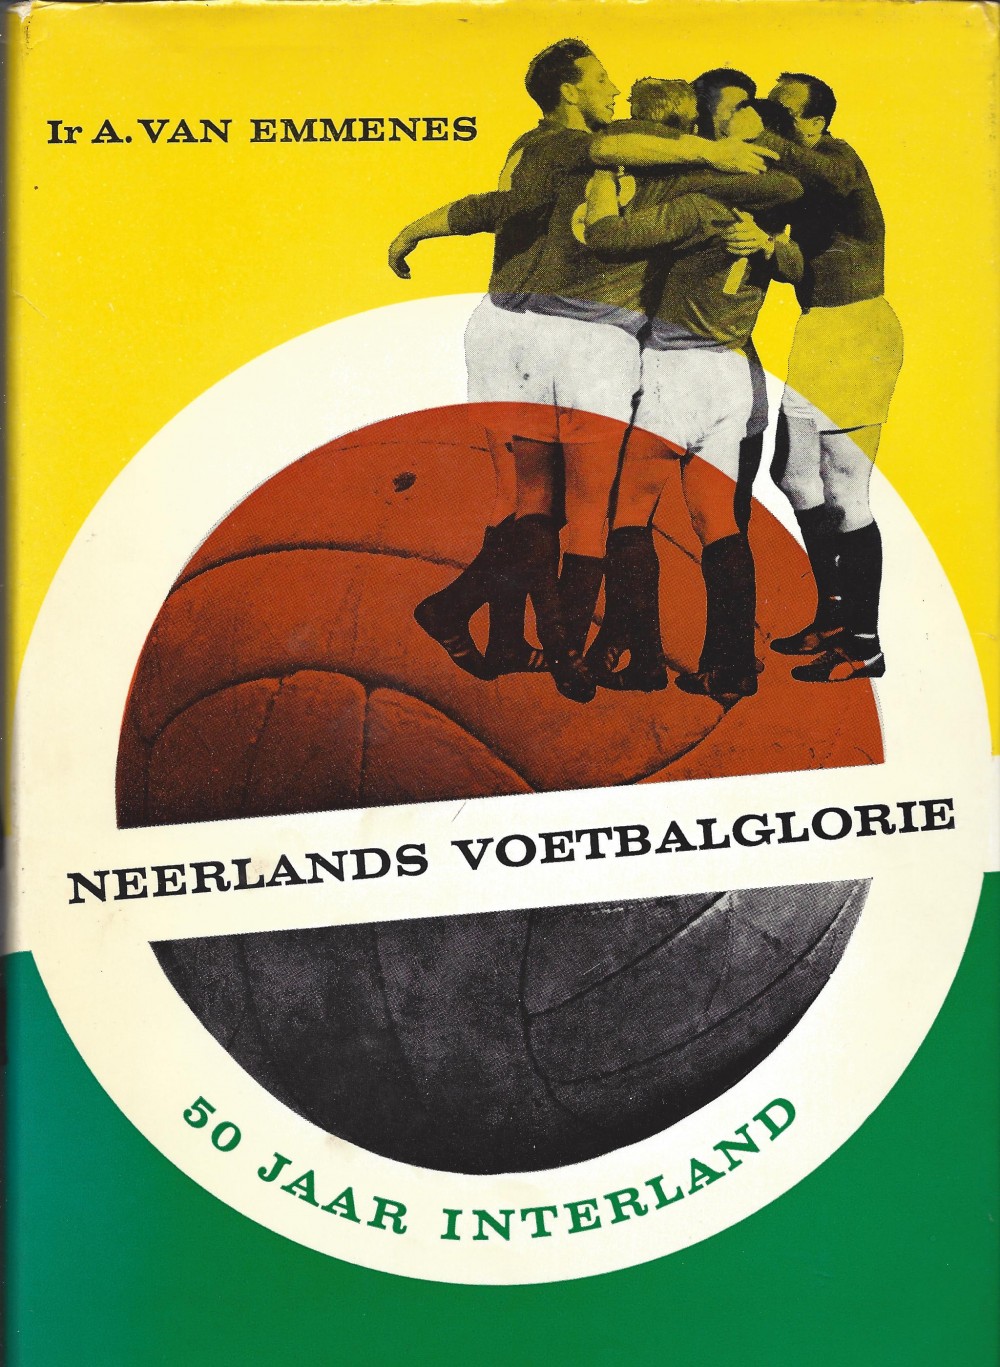 Emmenes,A. van Ir. - Neerlands voetbalglorie - 50 jaar interland -50 jaar Interland